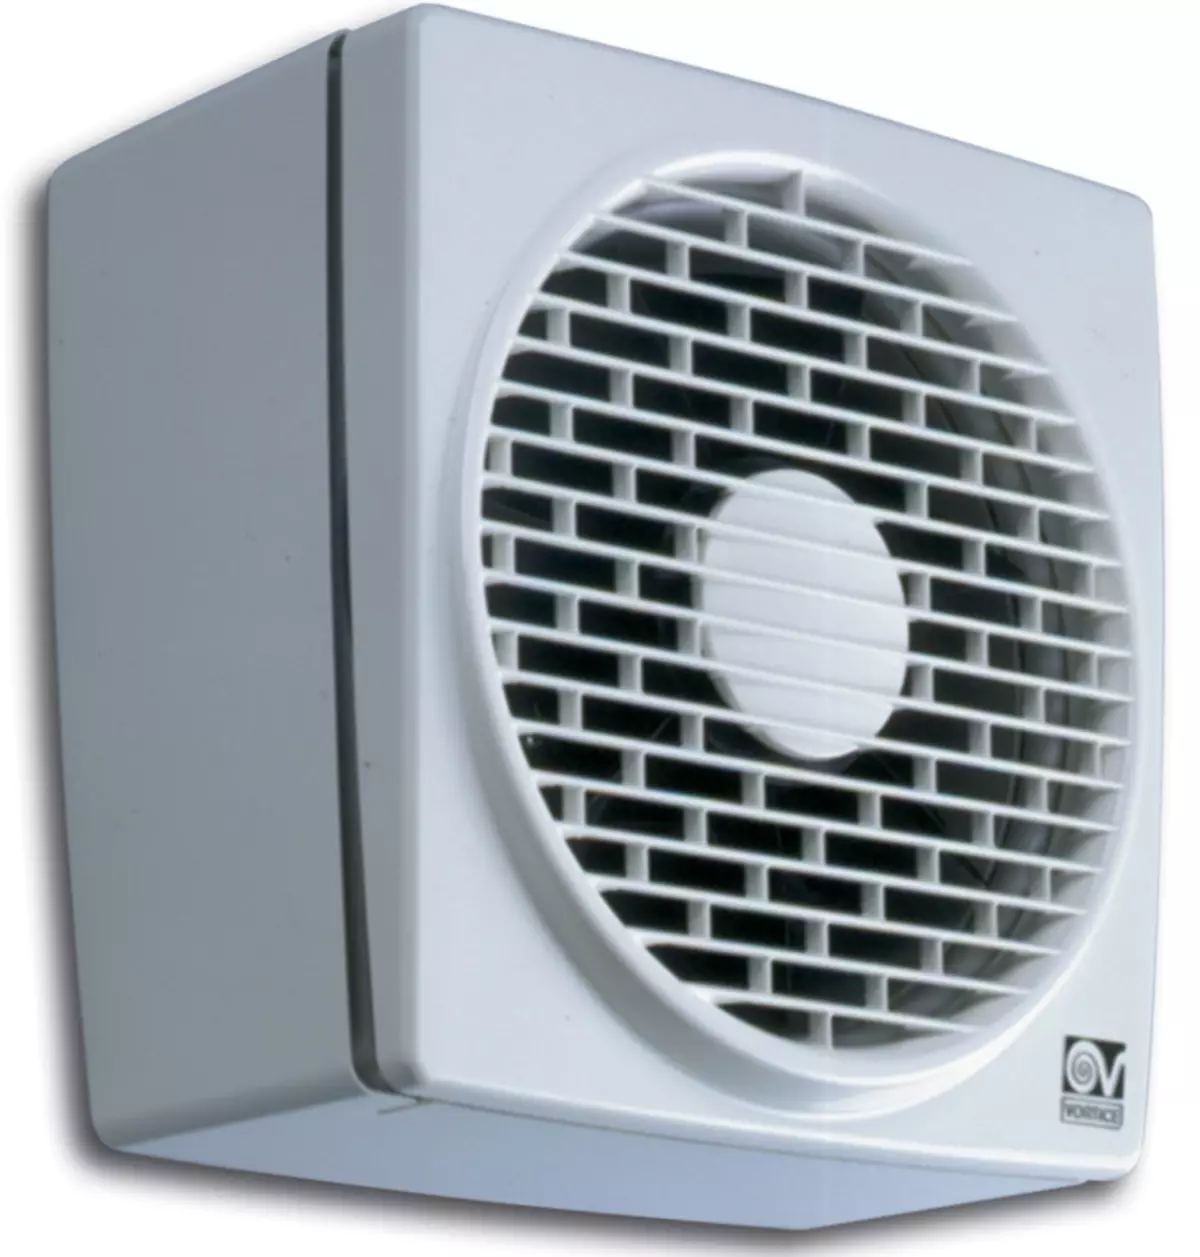 Ventilátor na toaletu: Výfukový ventilátor so spätným ventilom a tichým stropným ventilátorom pre kúpeľne, iné možnosti. Čo je lepšie vybrať si model? 10469_21